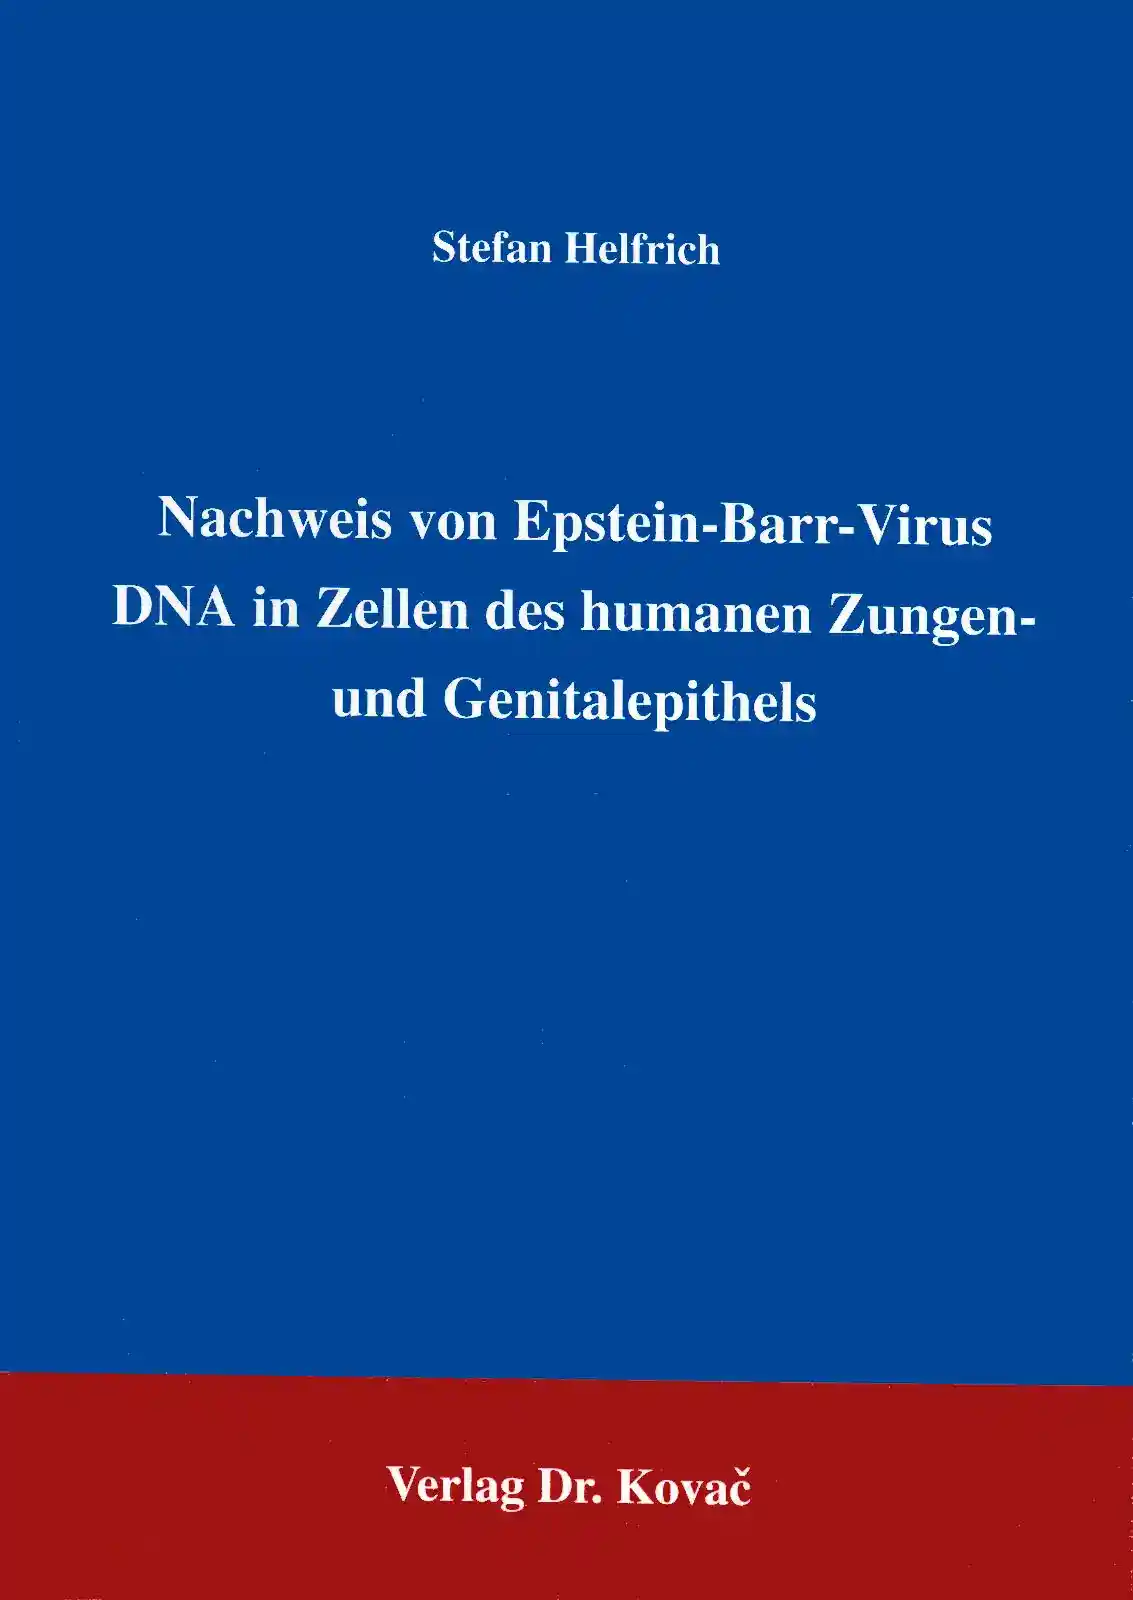 Nachweis von Epstein-Barr-Virus DNA in Zellen des humanen Zungen- und Genitalepithels (Forschungsarbeit)